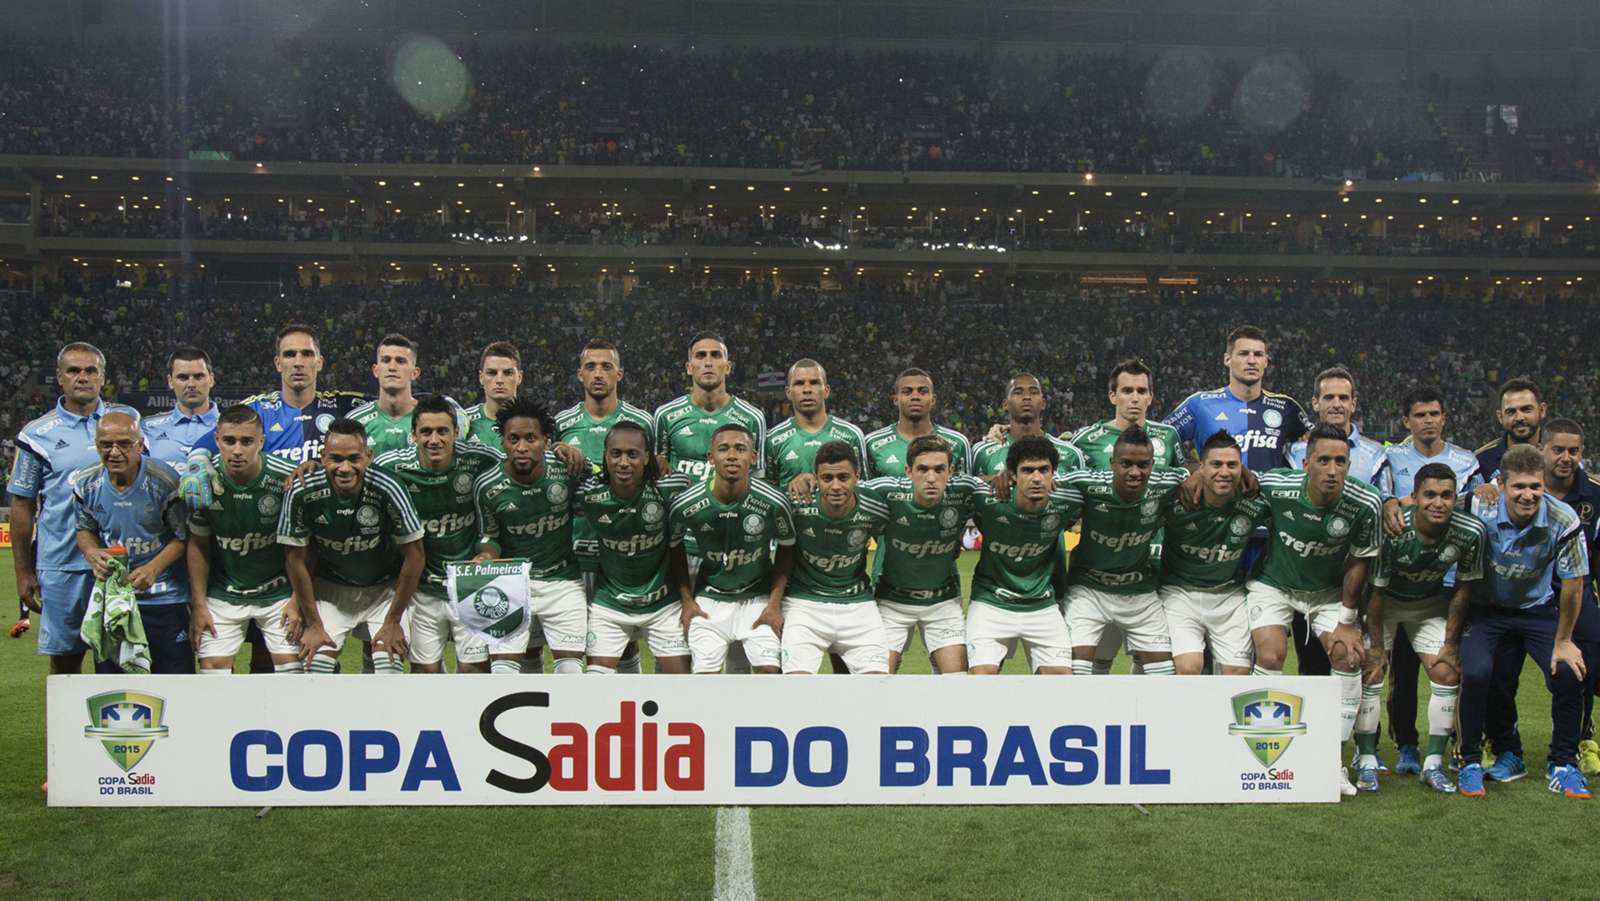 Já no ano seguinte, em 2015, o Alviverde conquistou seu primeiro título em sua nova casa. Em cima do Santos, com o último pênalti batido por Fernando Prass, venceu a Copa do Brasil. 